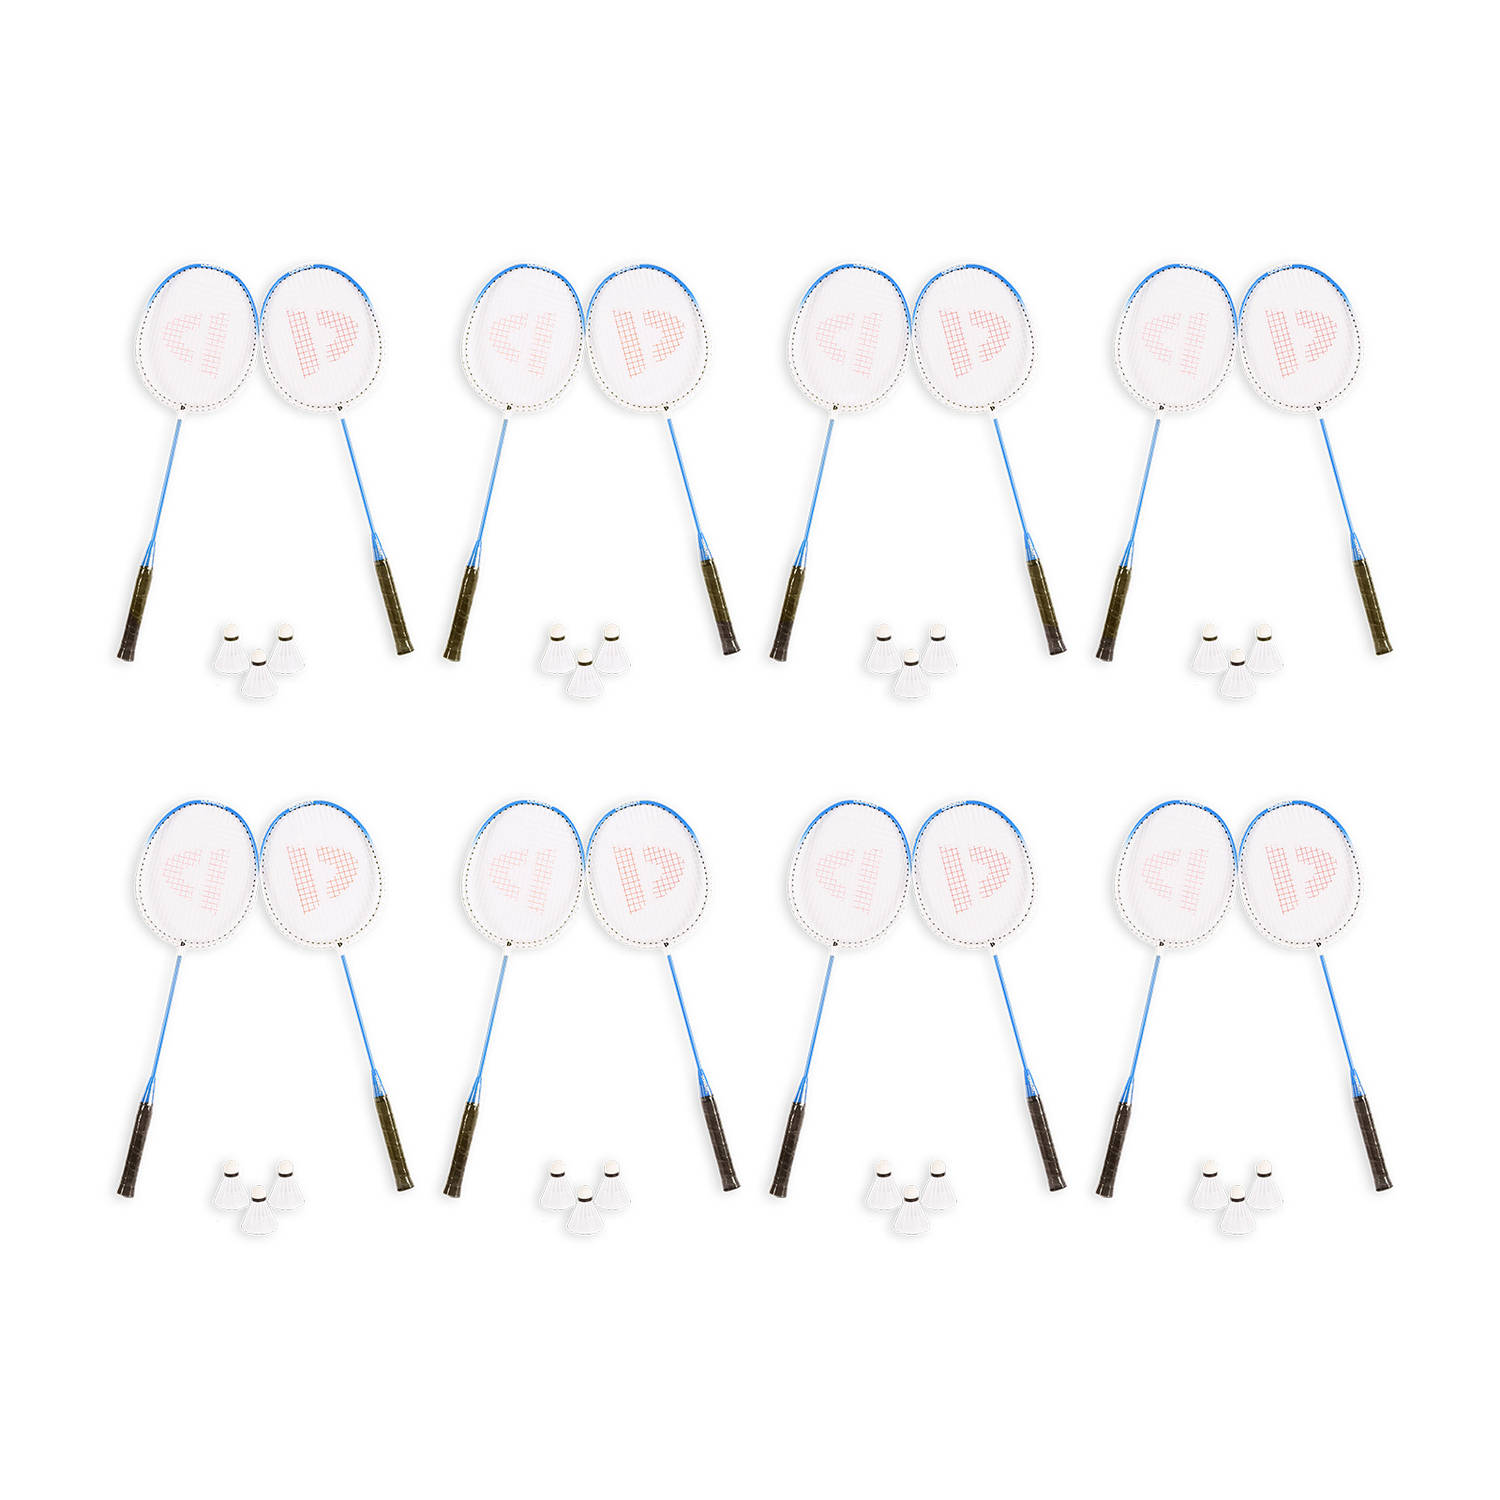 Badminton Set voor 16 Personen - 8 Sets met 16 Badminton Rackets en 24 Shuttles - Inclusief Draagtas